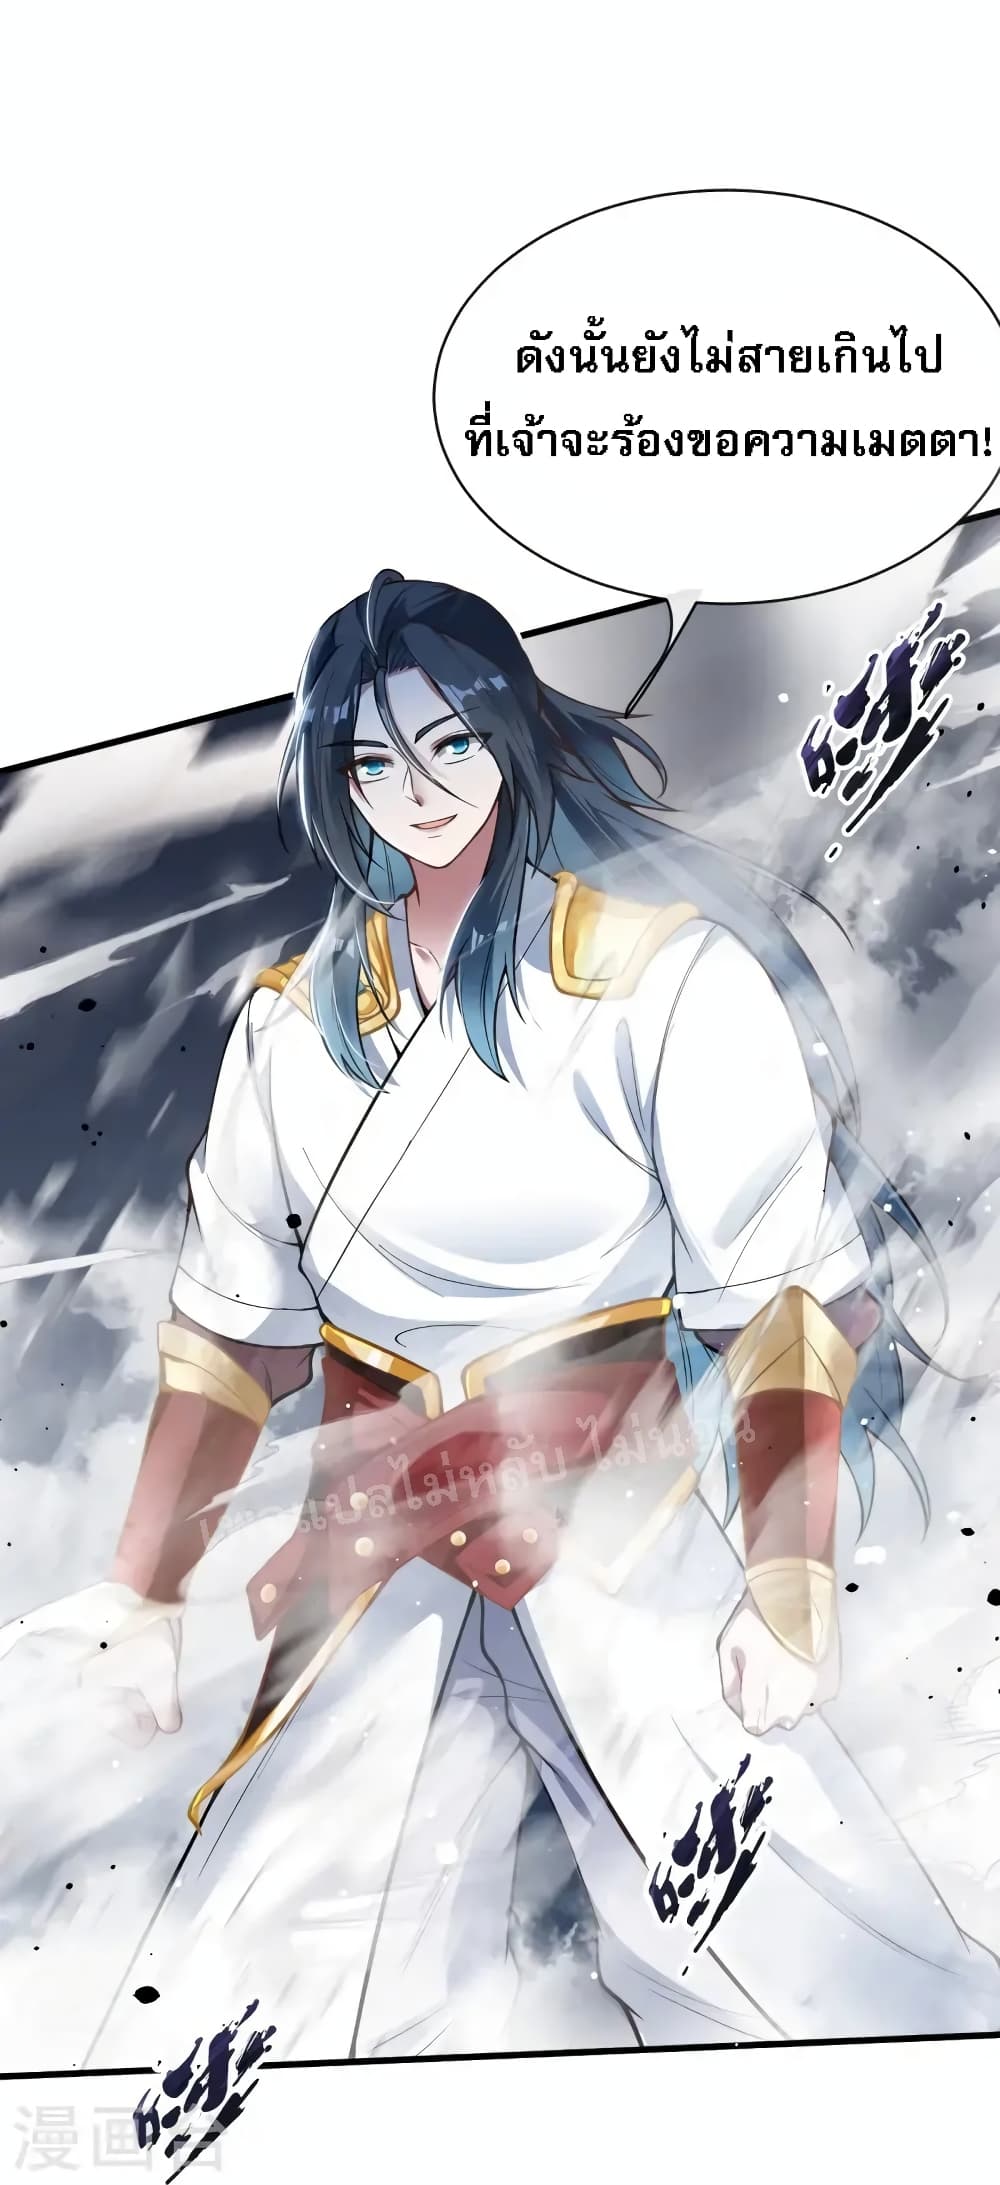 The Sword Immortal Emperor was reborn as a son-in-law 10-10